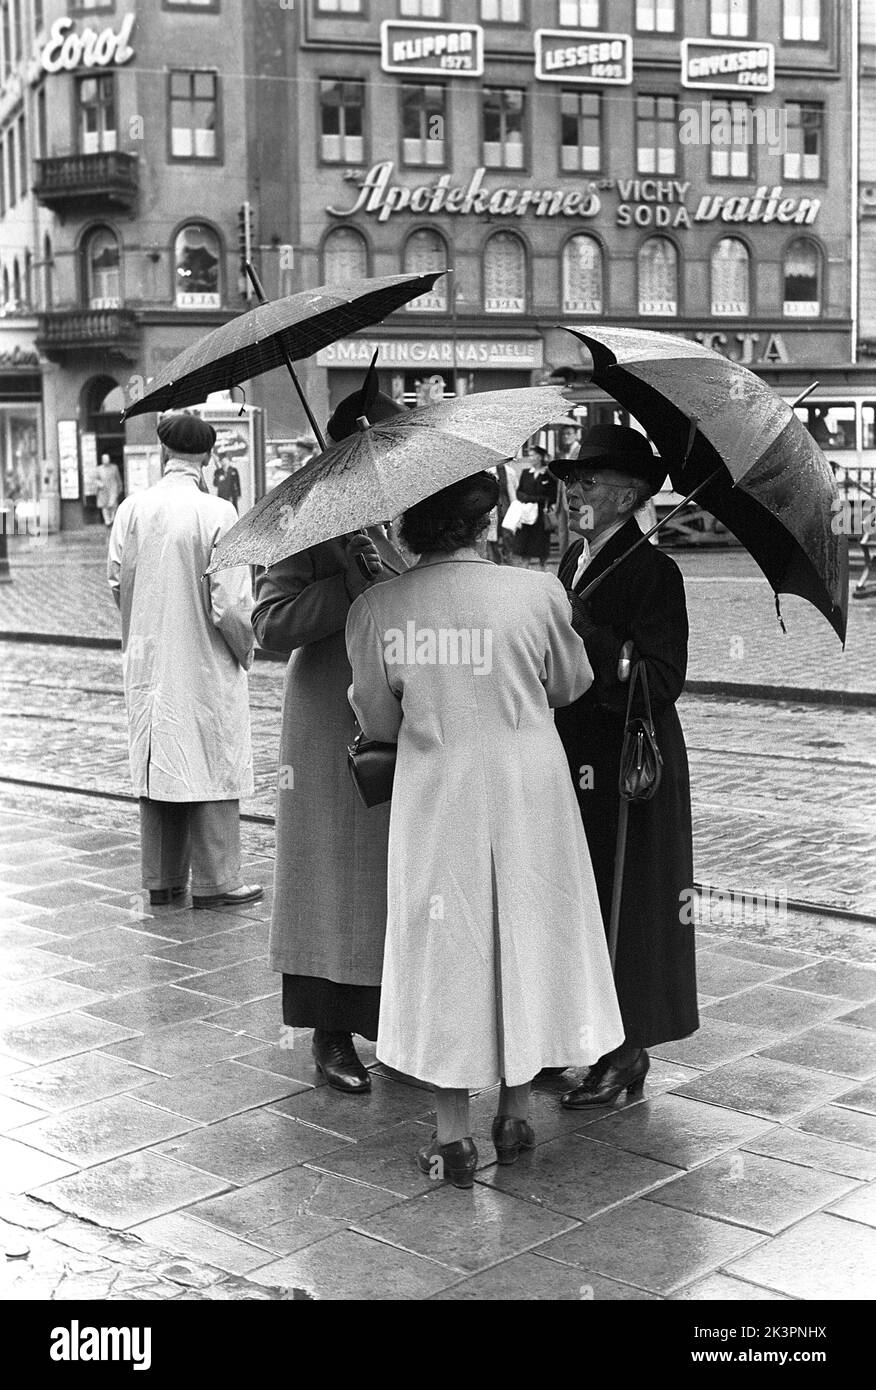 Parasols dans le 1950s. Un groupe de femmes âgées se tient ensemble sous leurs parapluies. C'est un jour pluvieux à Stockholm Suède 1953. Réf. 2A-1 Banque D'Images